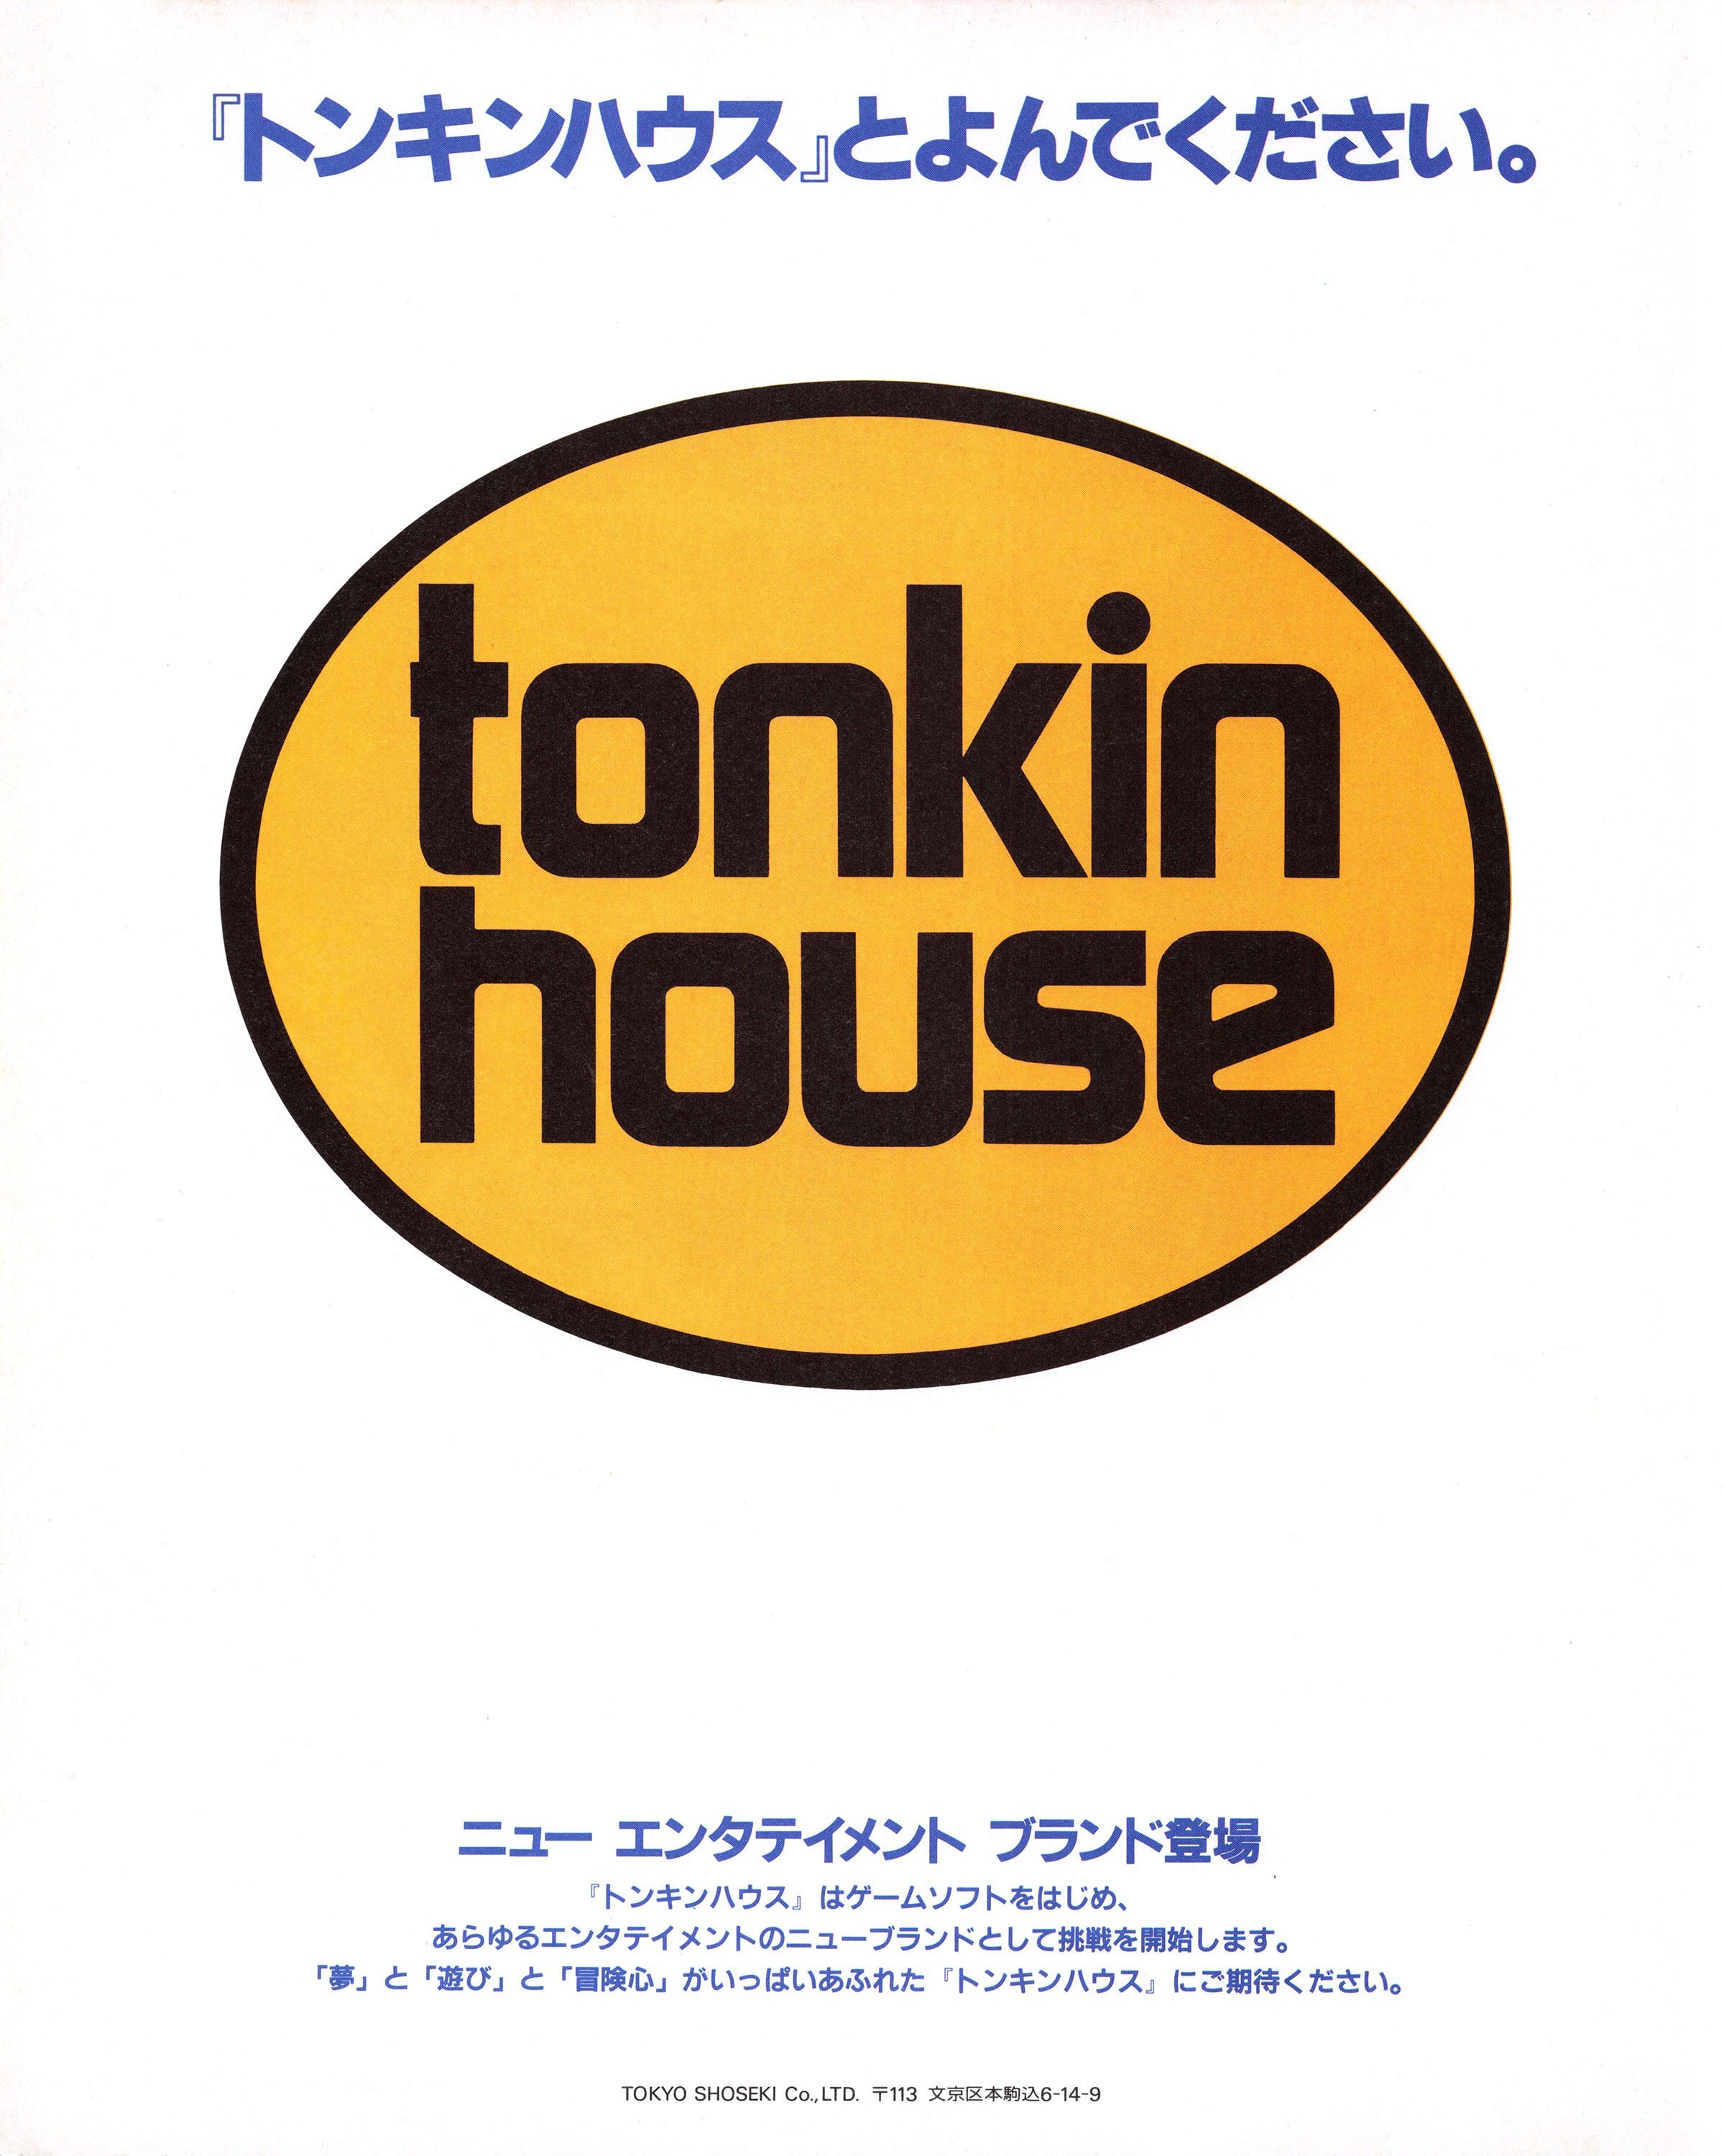 Tonkin House introduction (Japan) (April 1989)